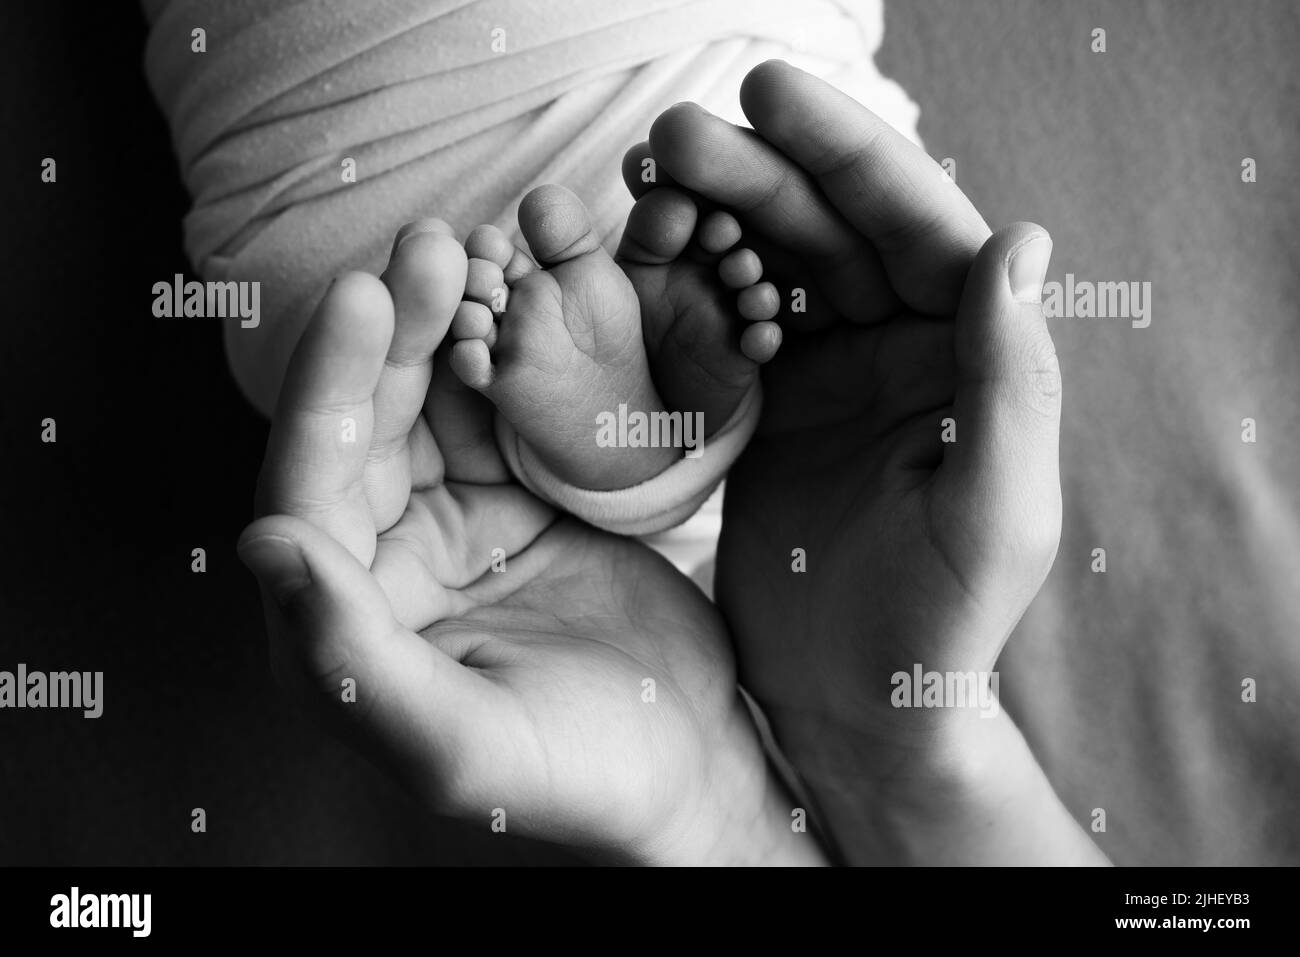 Ein Vater und eine Mutter halten ein neugeborenes Baby an den Beinen. Foto von Fuß, Fersen und Fingern. Schwarzweiß-Makrofotografie Stockfoto